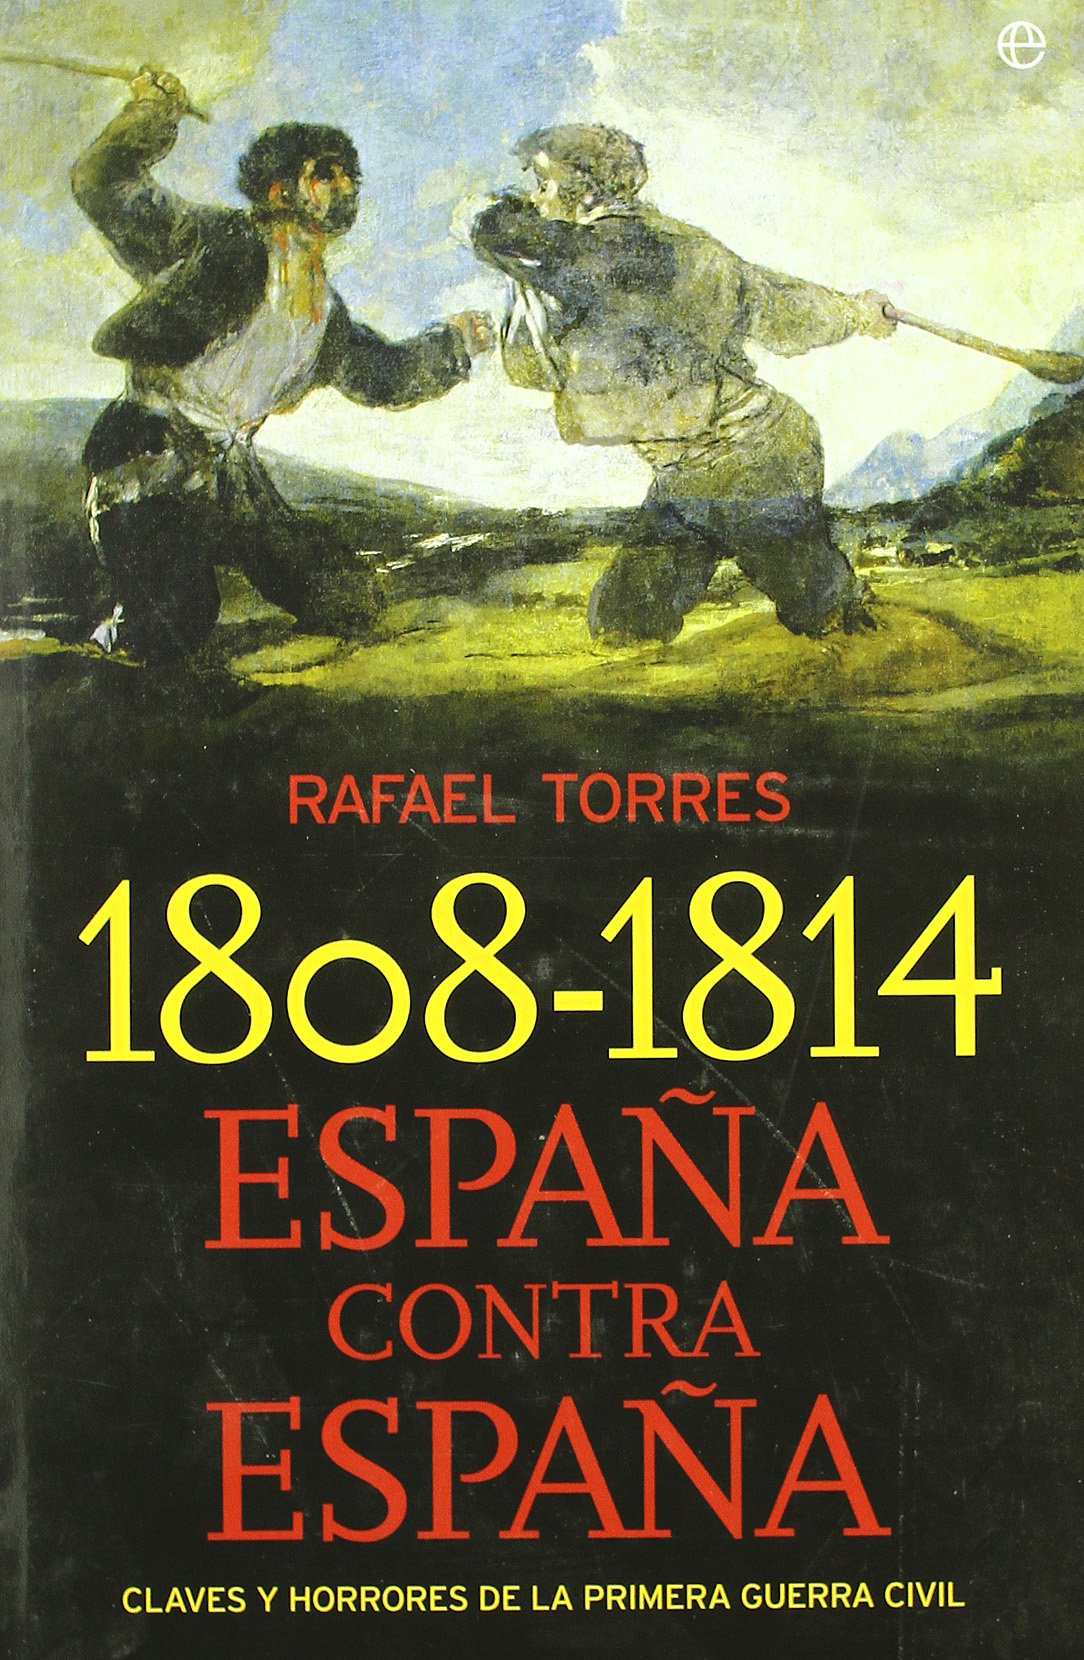 1808-1814 ESPAÑA CONTRA ESPAÑA